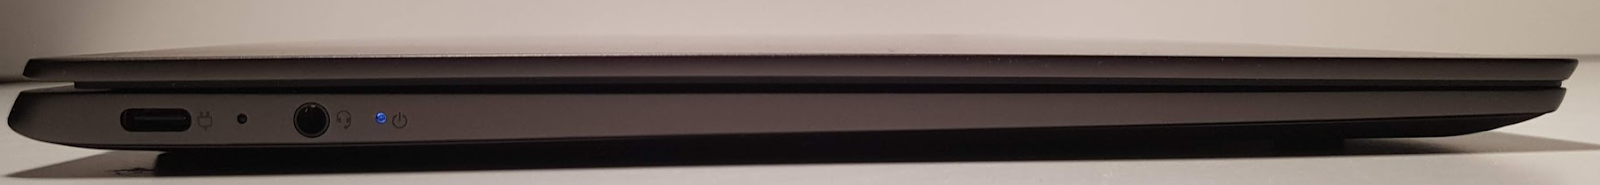 Обзор ноутбука Lenovo S730-13 (2018): мощное железо в стильном алюминиевом корпусе - 4